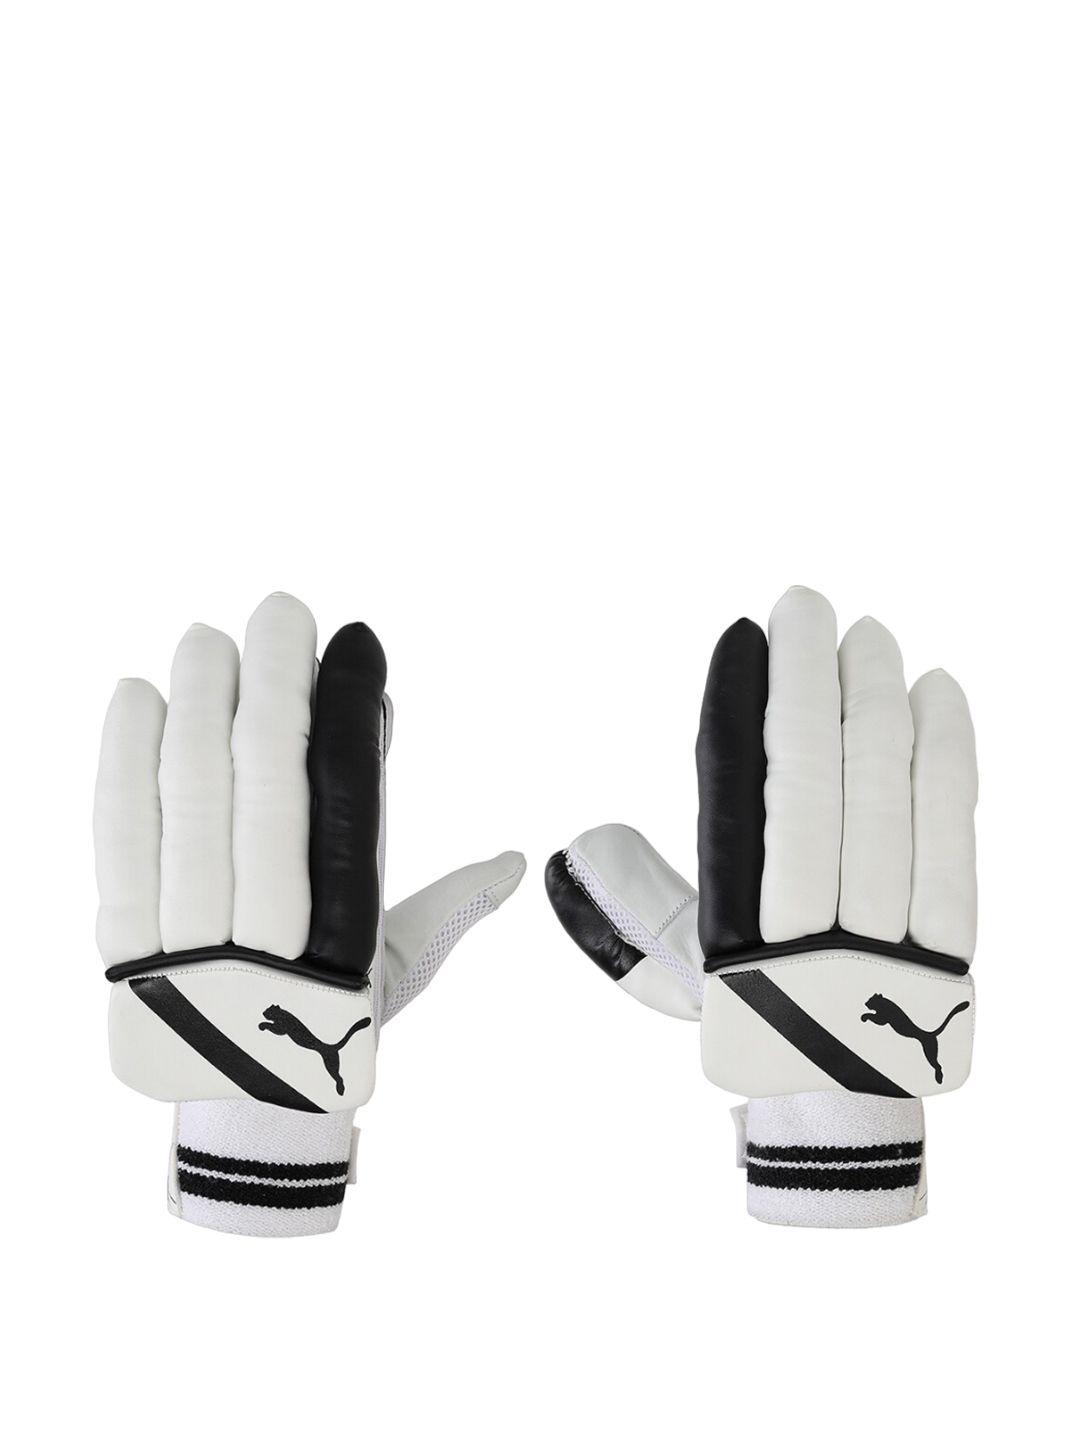 puma-future-3.2-men-printed-sports-gloves